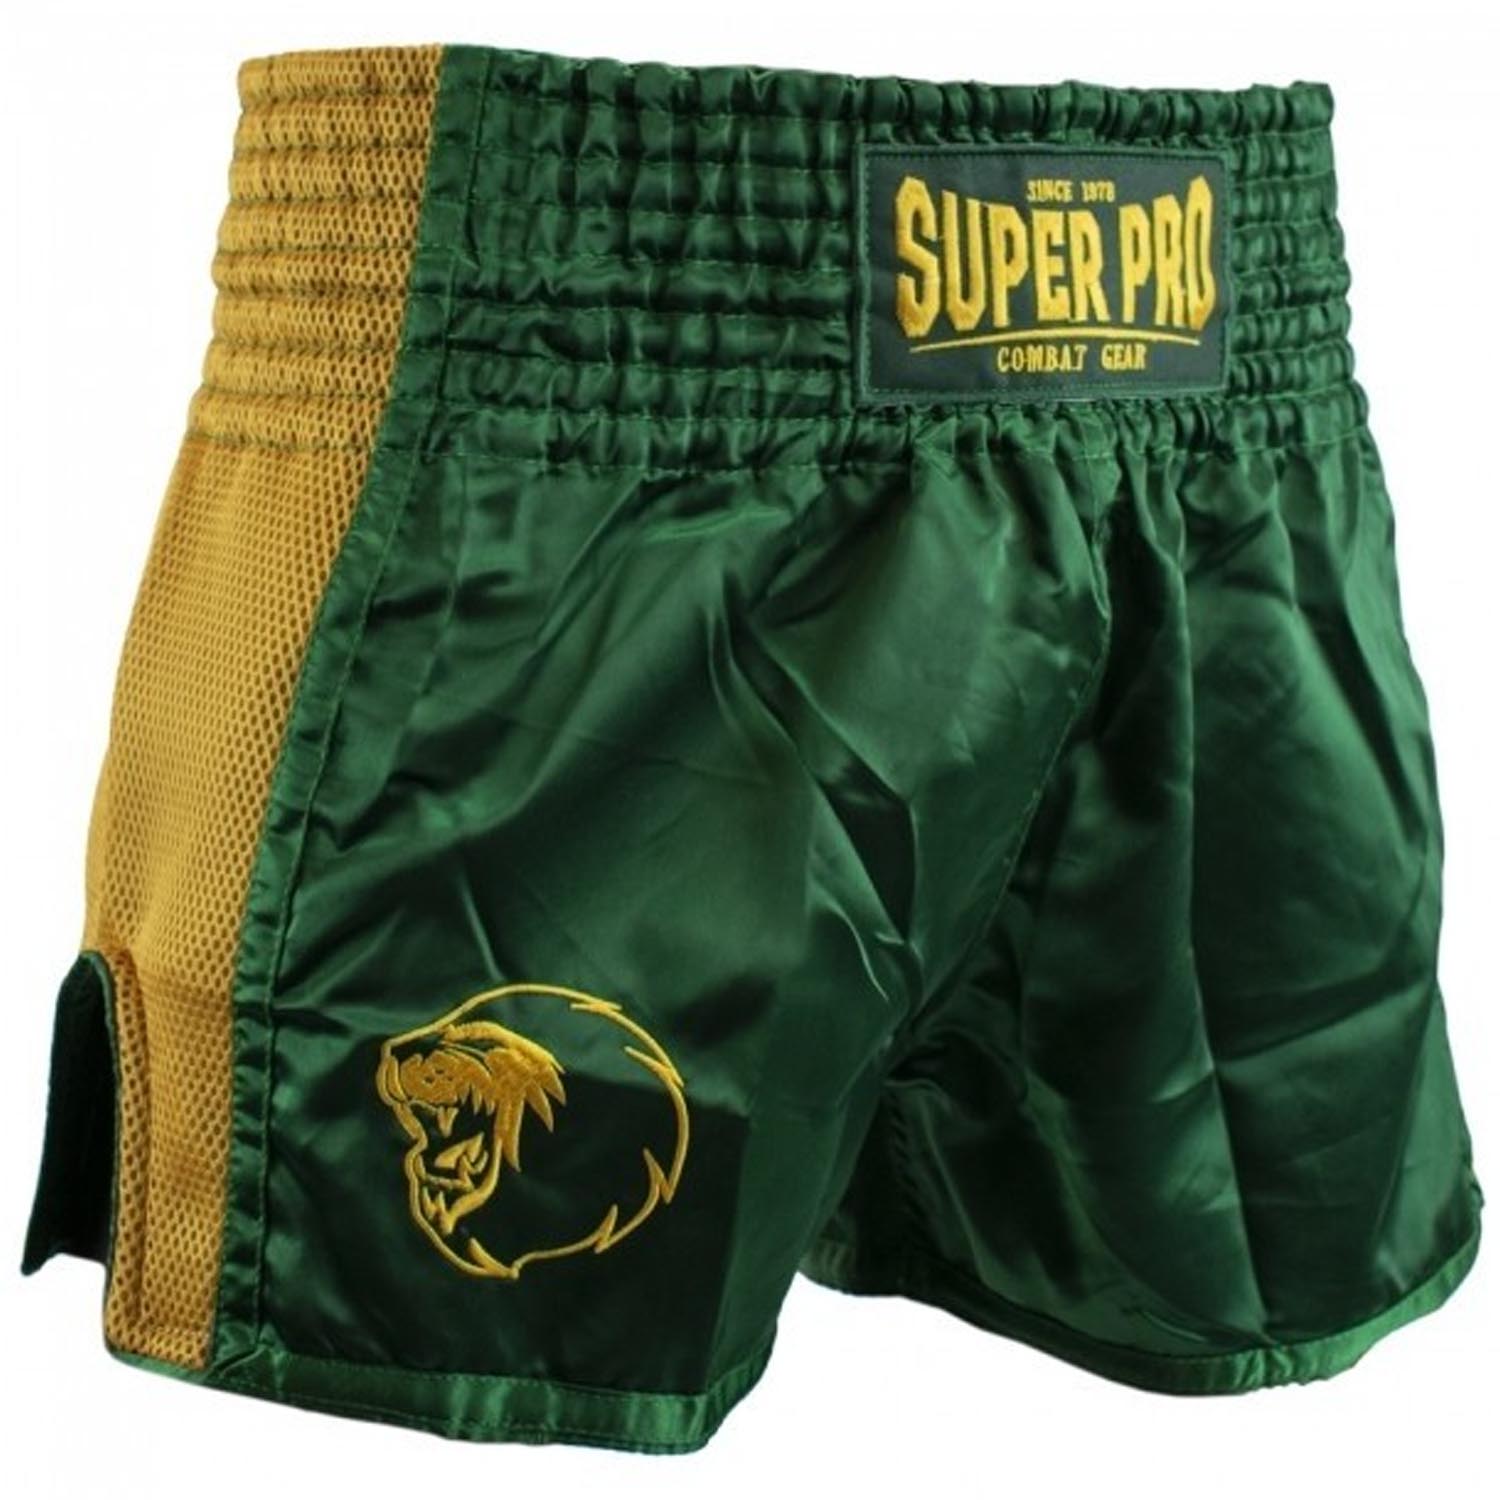 Super Pro Muay Thai Shorts, Brave, green-gold, S